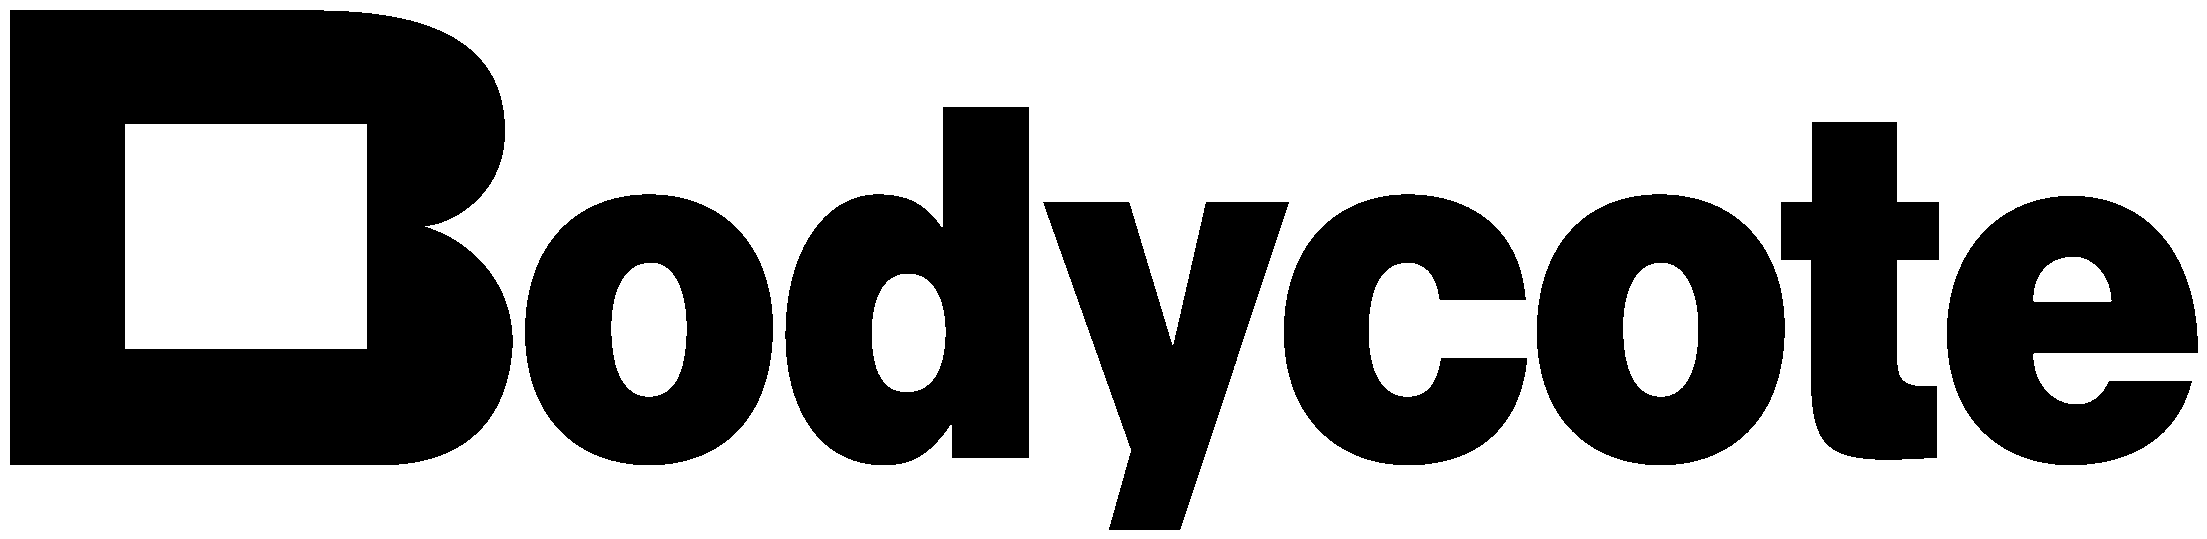 Bodycote Logo Black And White - Bodycote Plc (2400x2400), Png Download